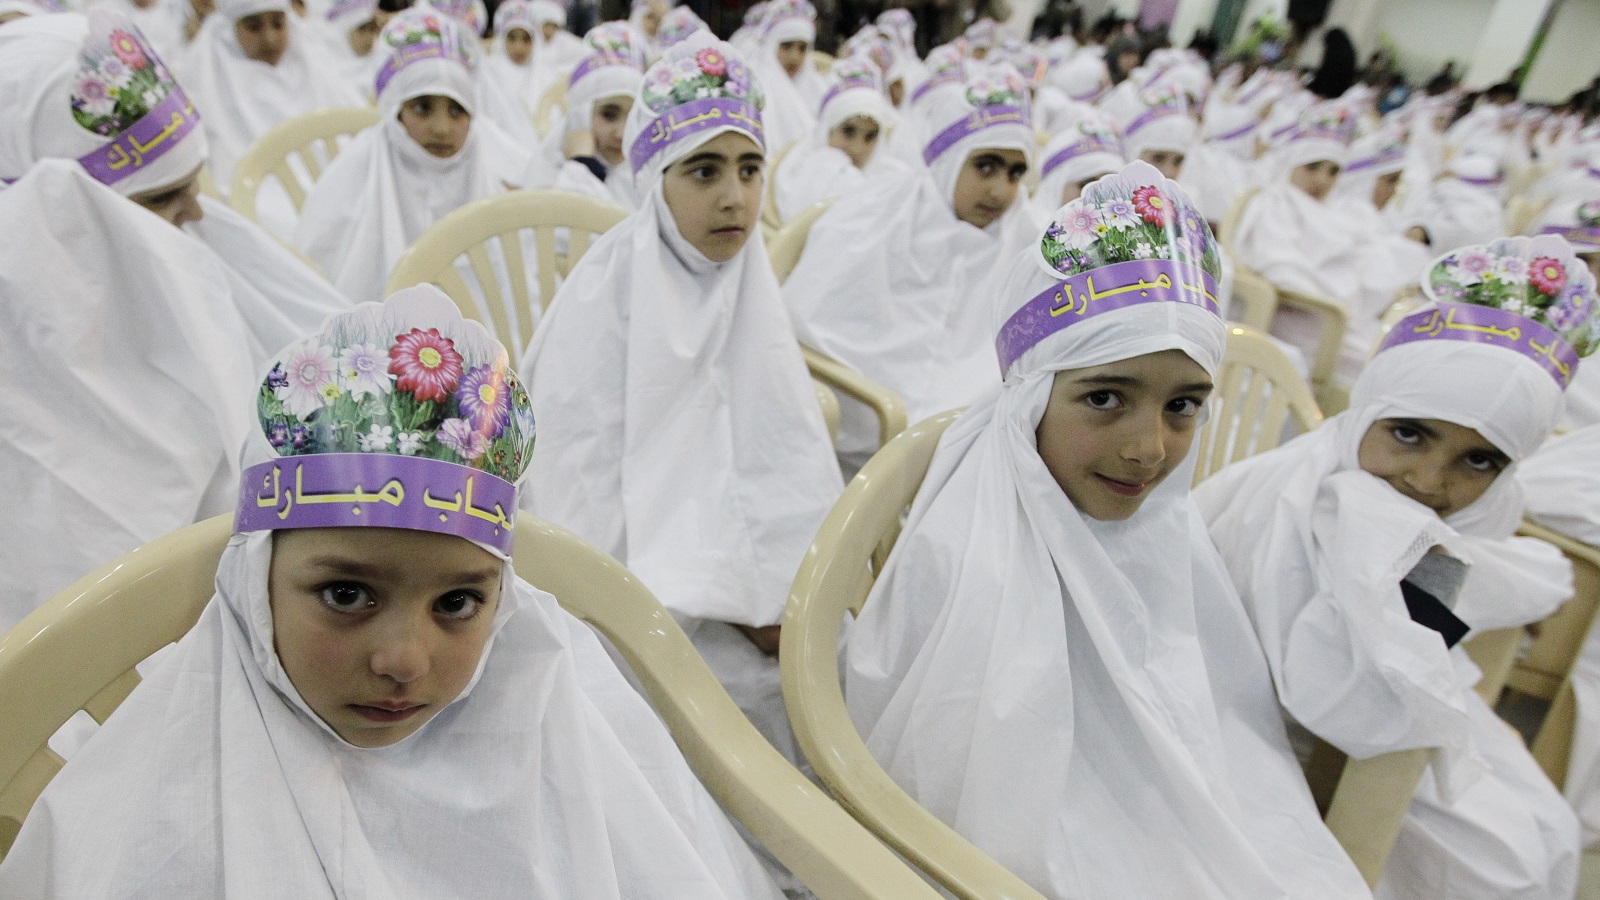 "حرية" ارتداء الحجاب وخلعه لدى النسوة الشيعيات اللبنانيات